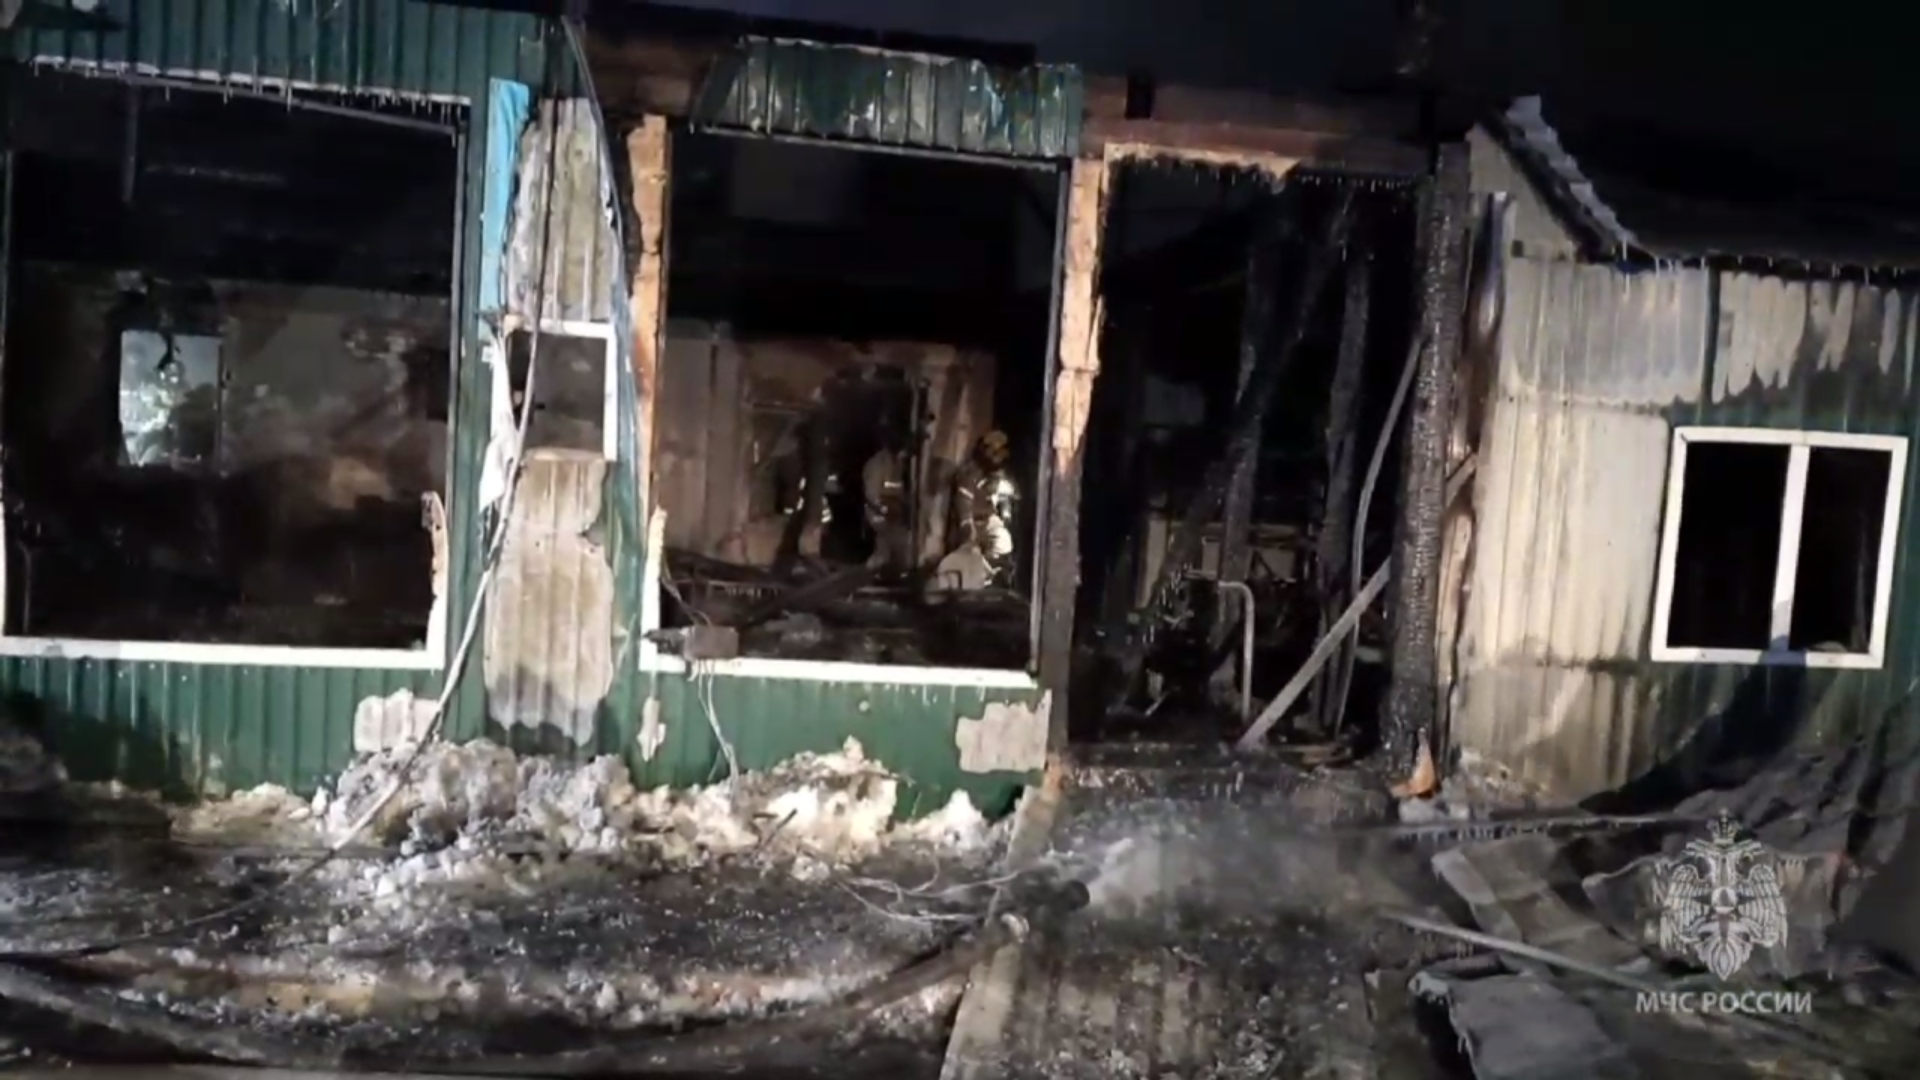 Ликвидация последствий пожара в доме престарелых в Кемерове. Скриншот из видео МЧС России